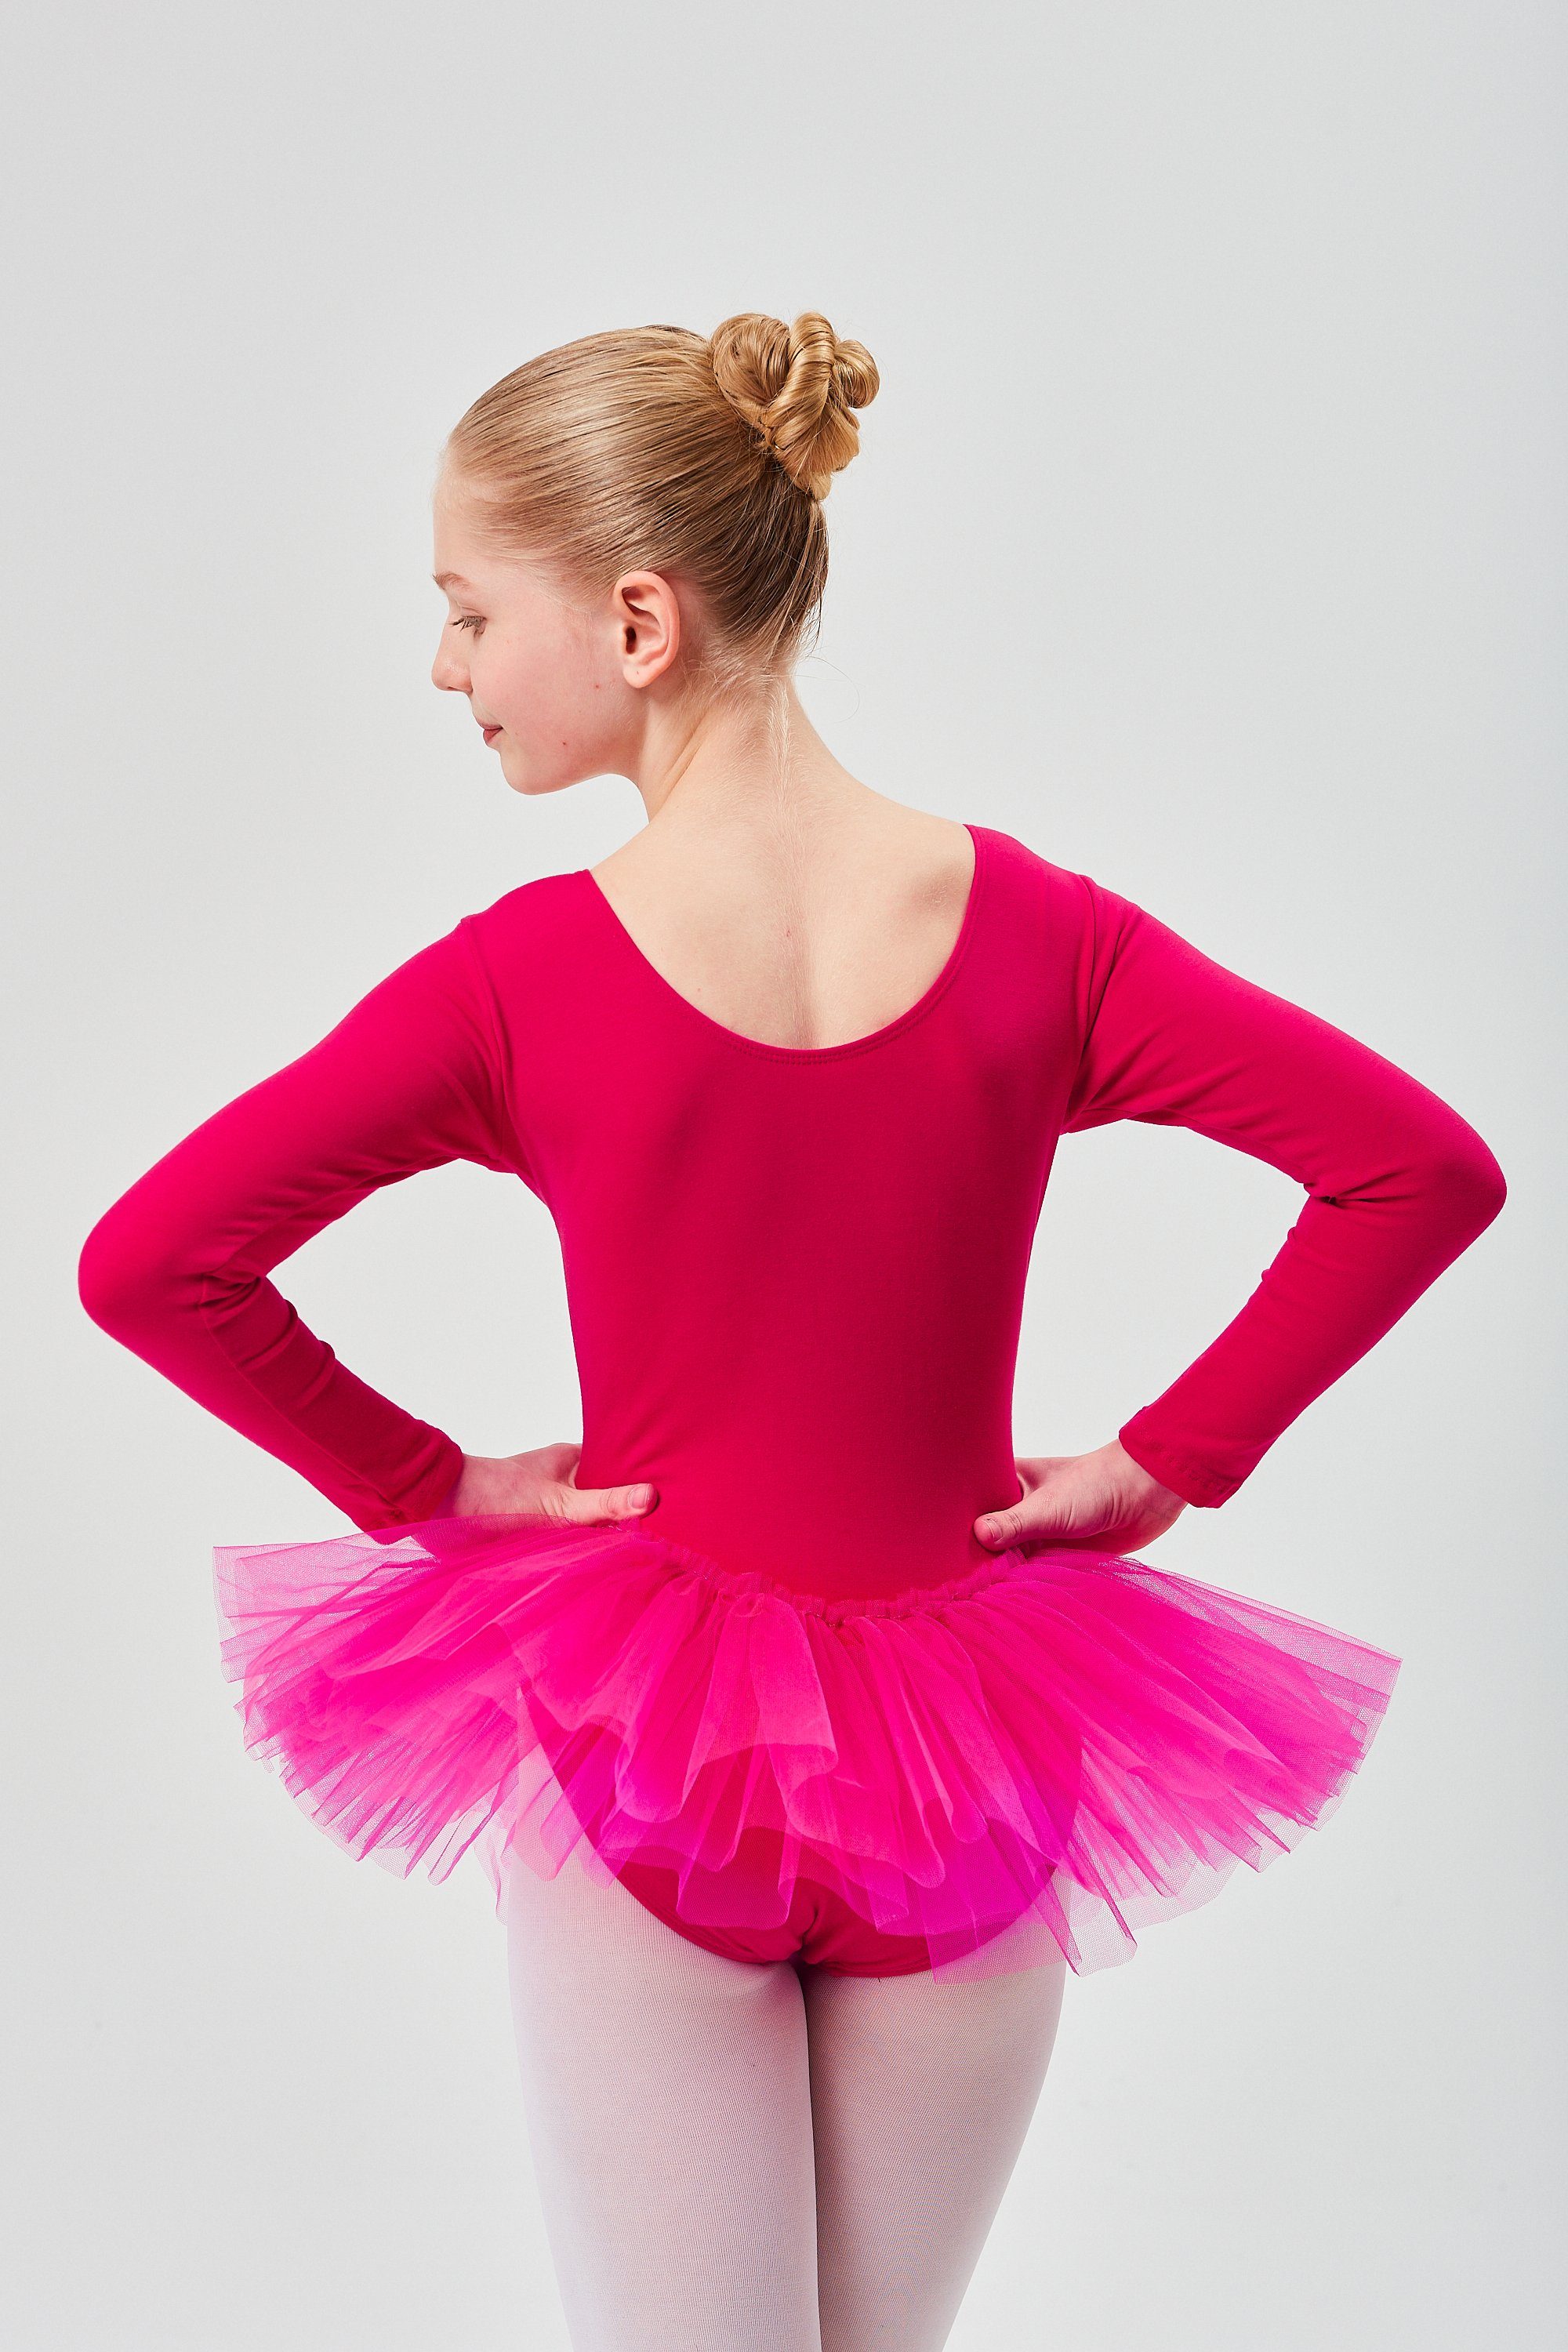 Alea mit Mädchen tanzmuster mit Ballett pink Ballettkleid langem Tüllkleid Arm Tutu Tüllrock für